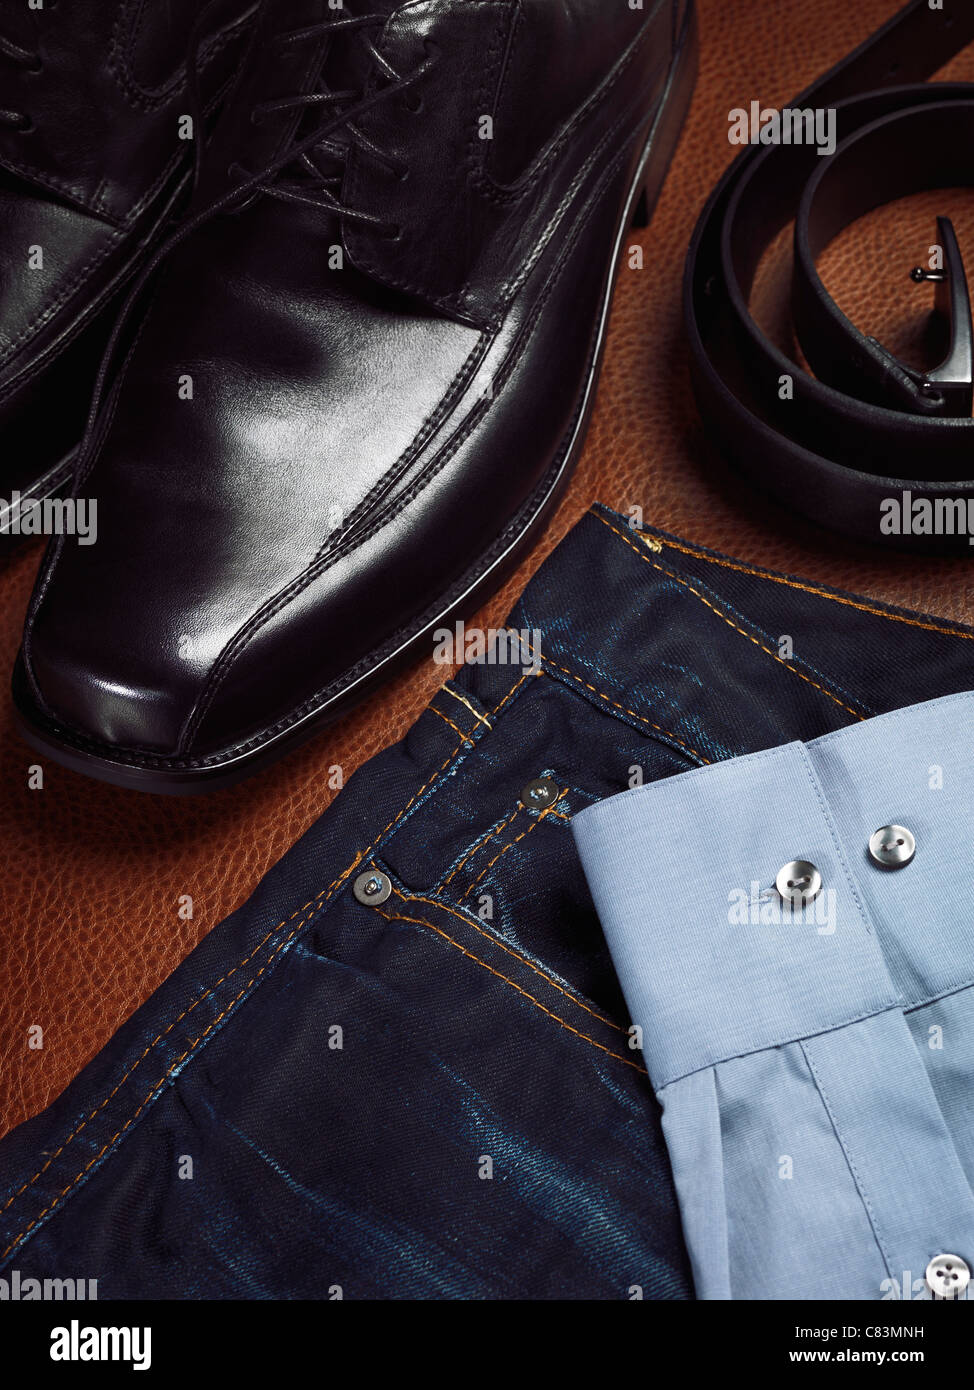 Mode de mens toujours la vie. Gros plan artistique de chaussures de ville, jeans, une ceinture et une chemise. Banque D'Images